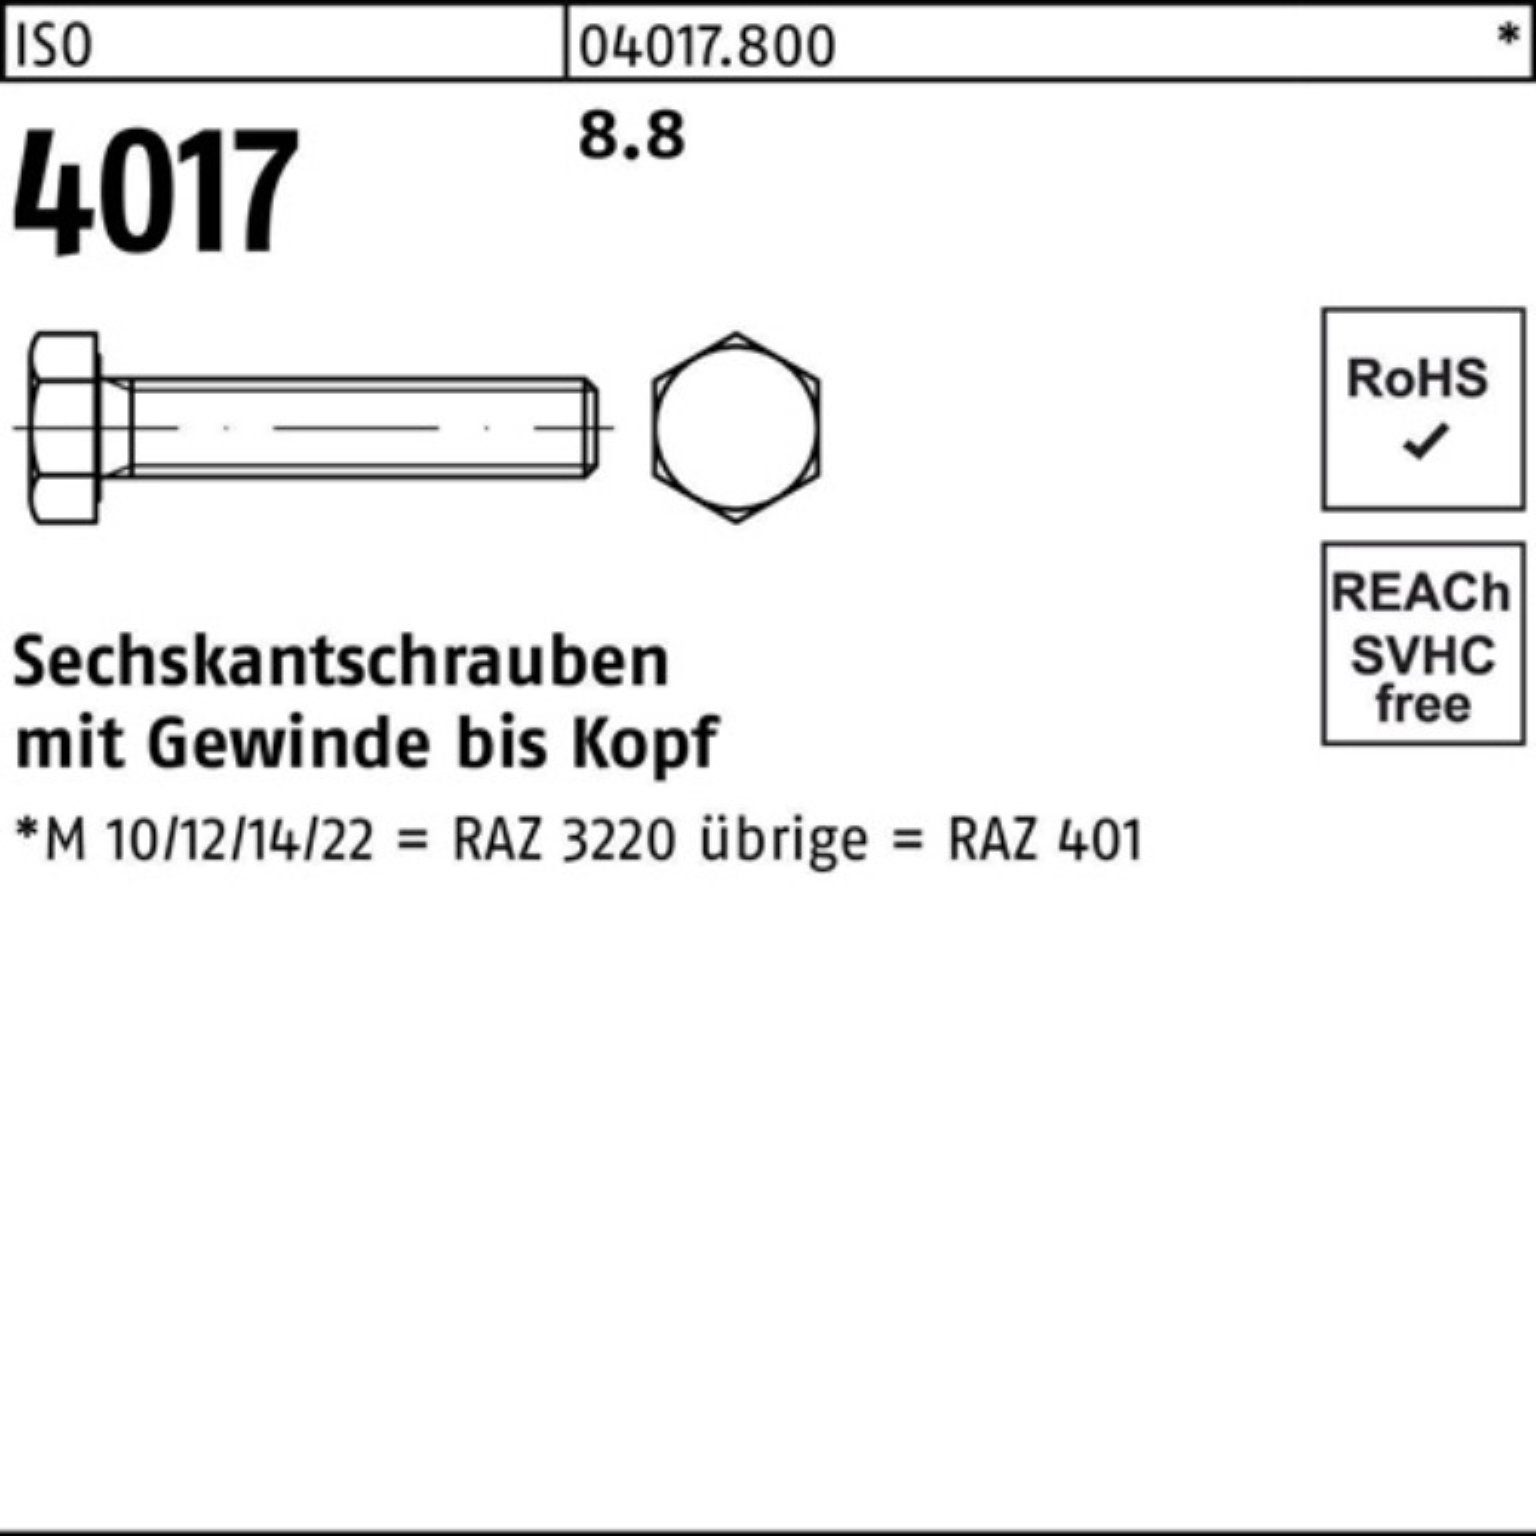 Stück Sechskantschraube M36x 100er 320 Bufab 1 4017 VG ISO 8.8 ISO Pack Sechskantschraube 401